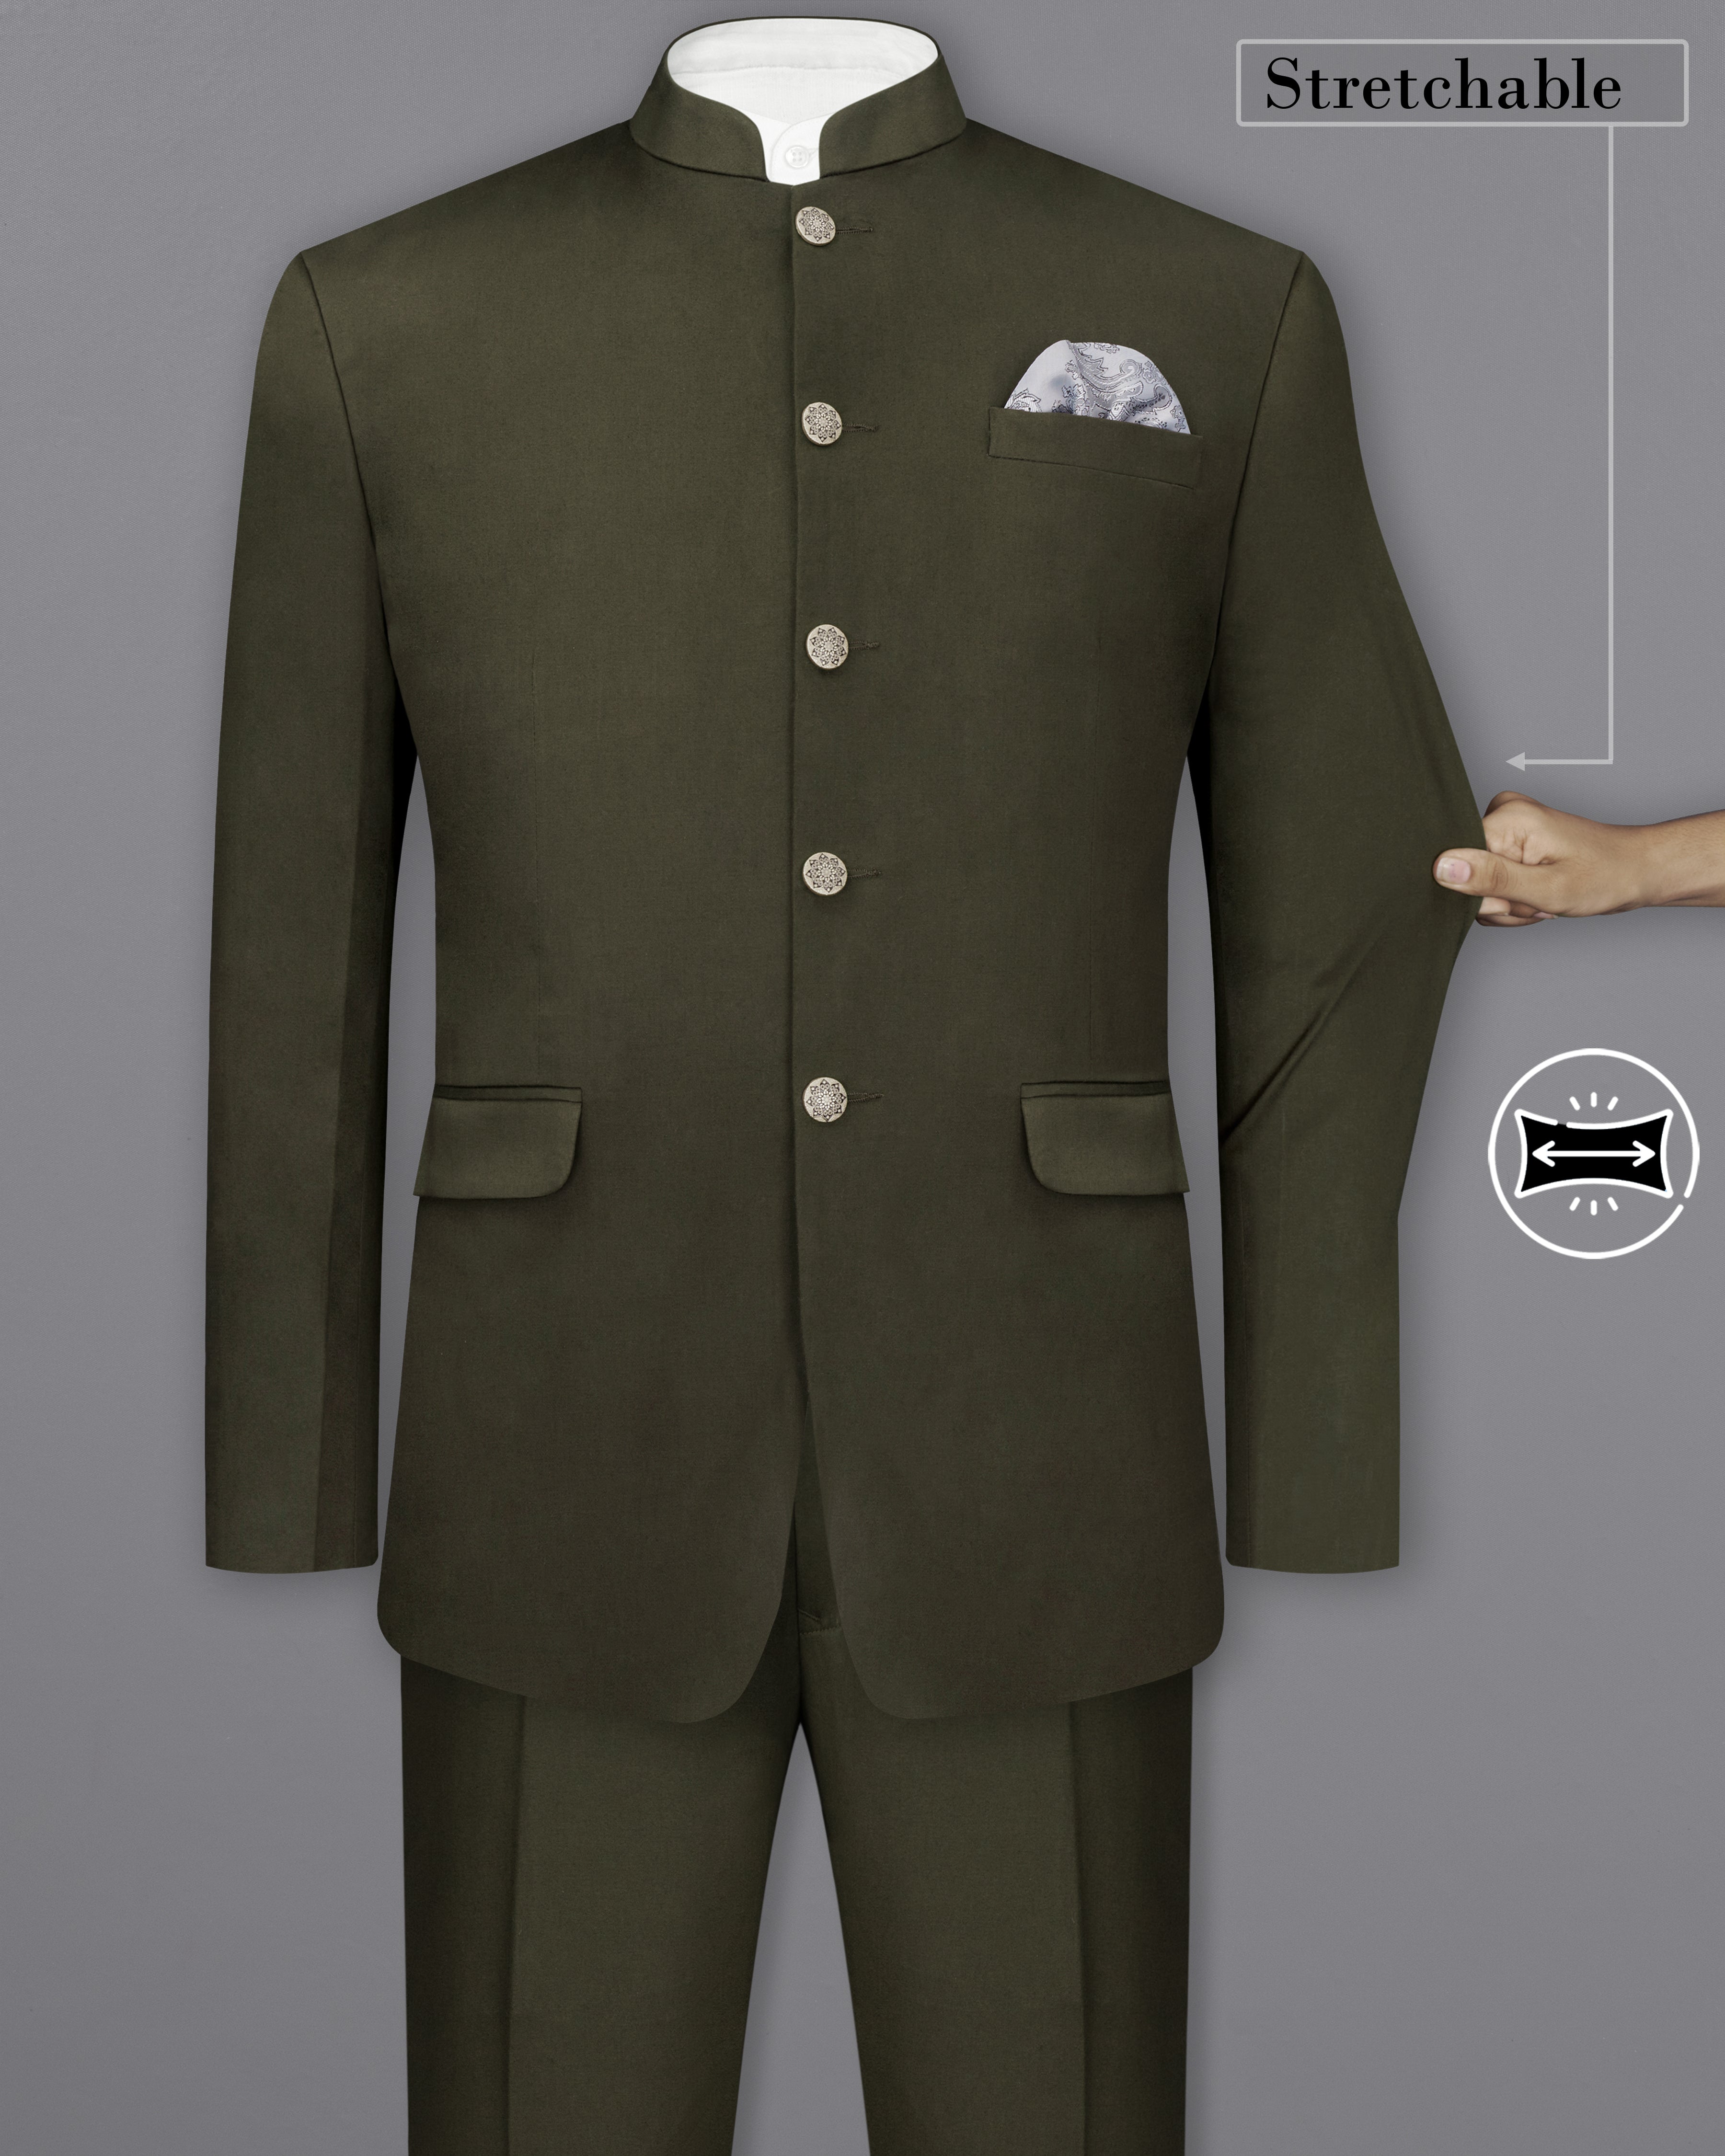 Buy Men Suit Light Green Suit Stylish Suit Two Piece Suit Wedding Wear Suits  for Men Elegant Suit Formal Fashion Online in India - Etsy